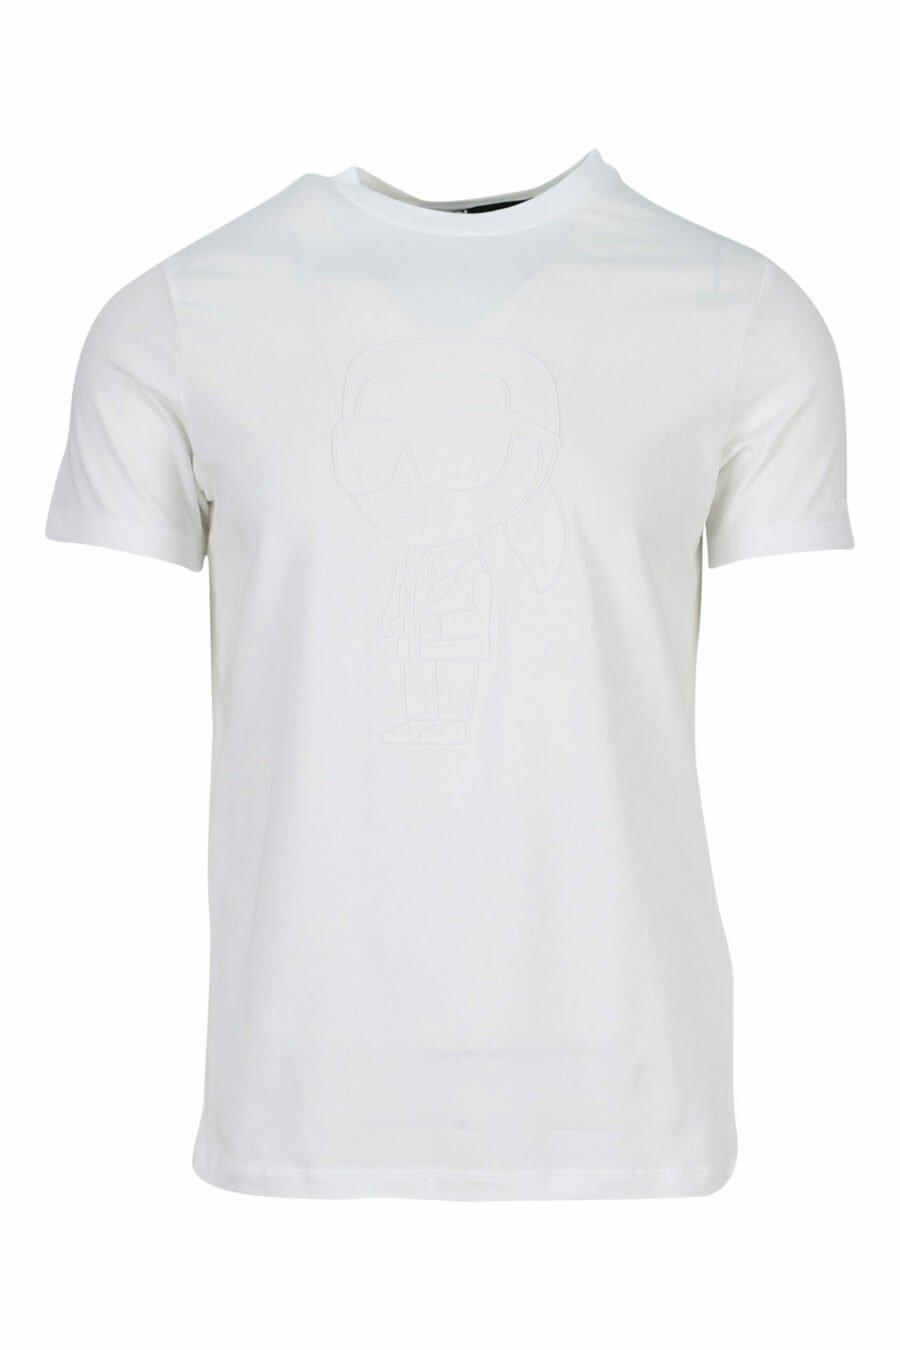 T-shirt branca com maxilogo monocromático emborrachado - 4062226401180 scaled